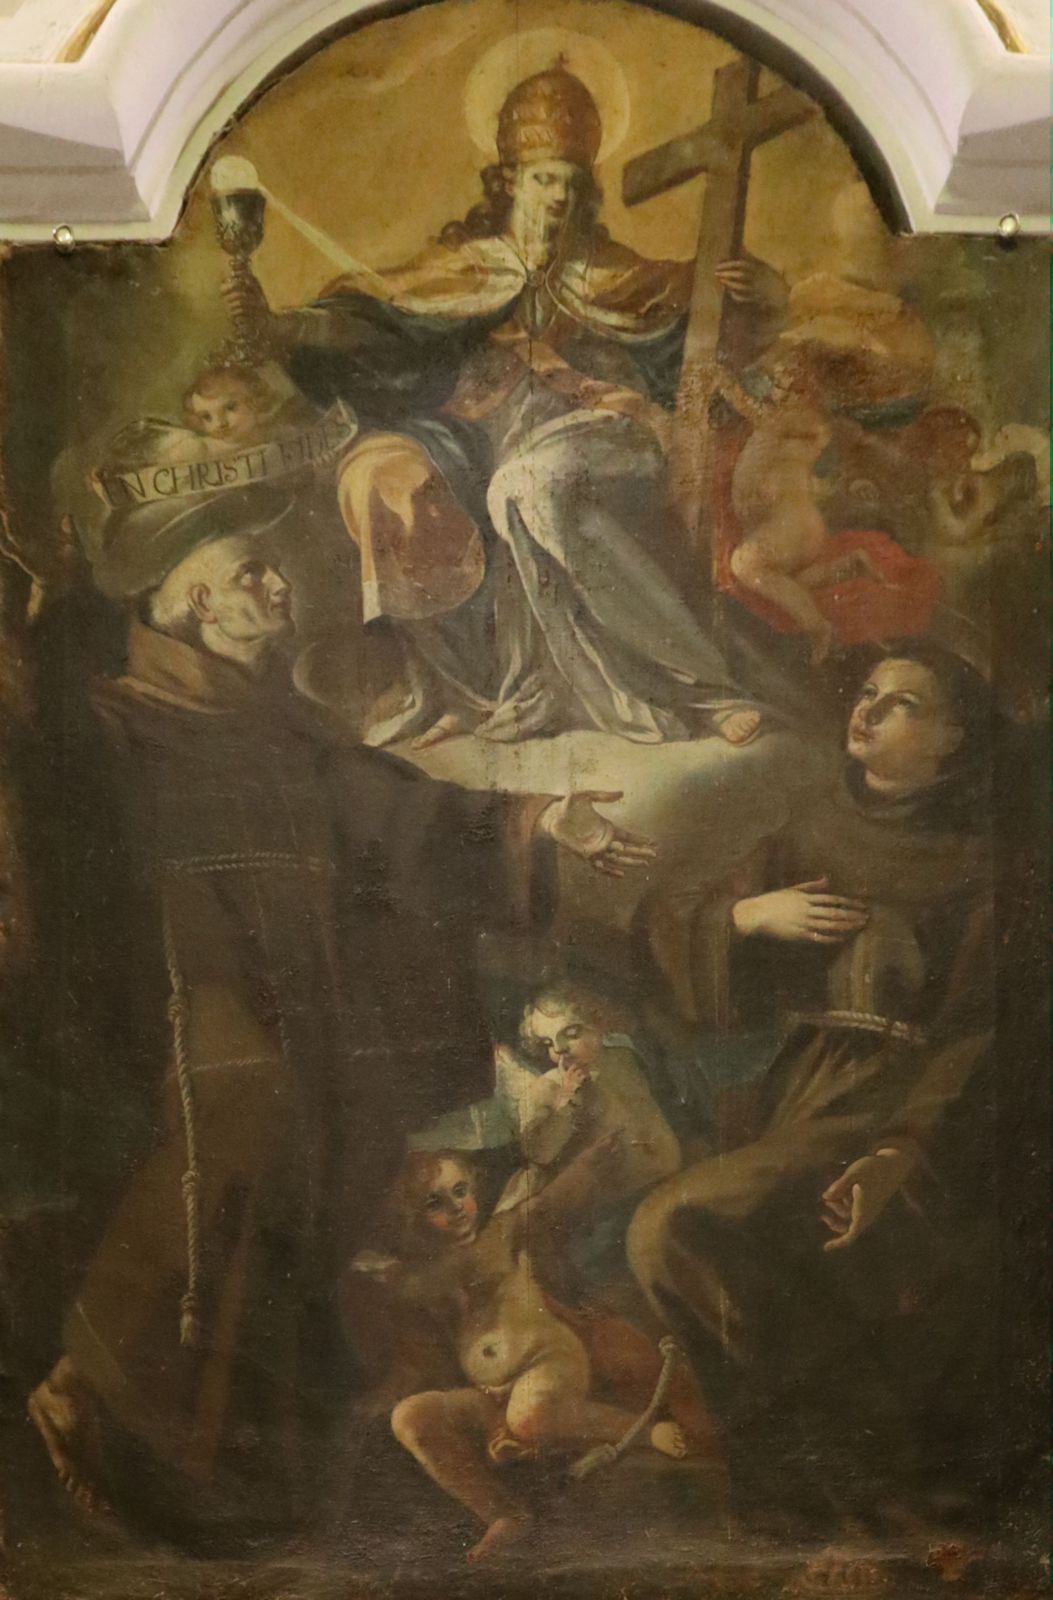 Cristoforo Santanna: Der Glaube - thronend mit Tiara - mit Petrus von Alcántara (links) und Paschalis Baylon, 1784, in der Klosterkirche Ecce Homo in Mesoraca in Kalabrien